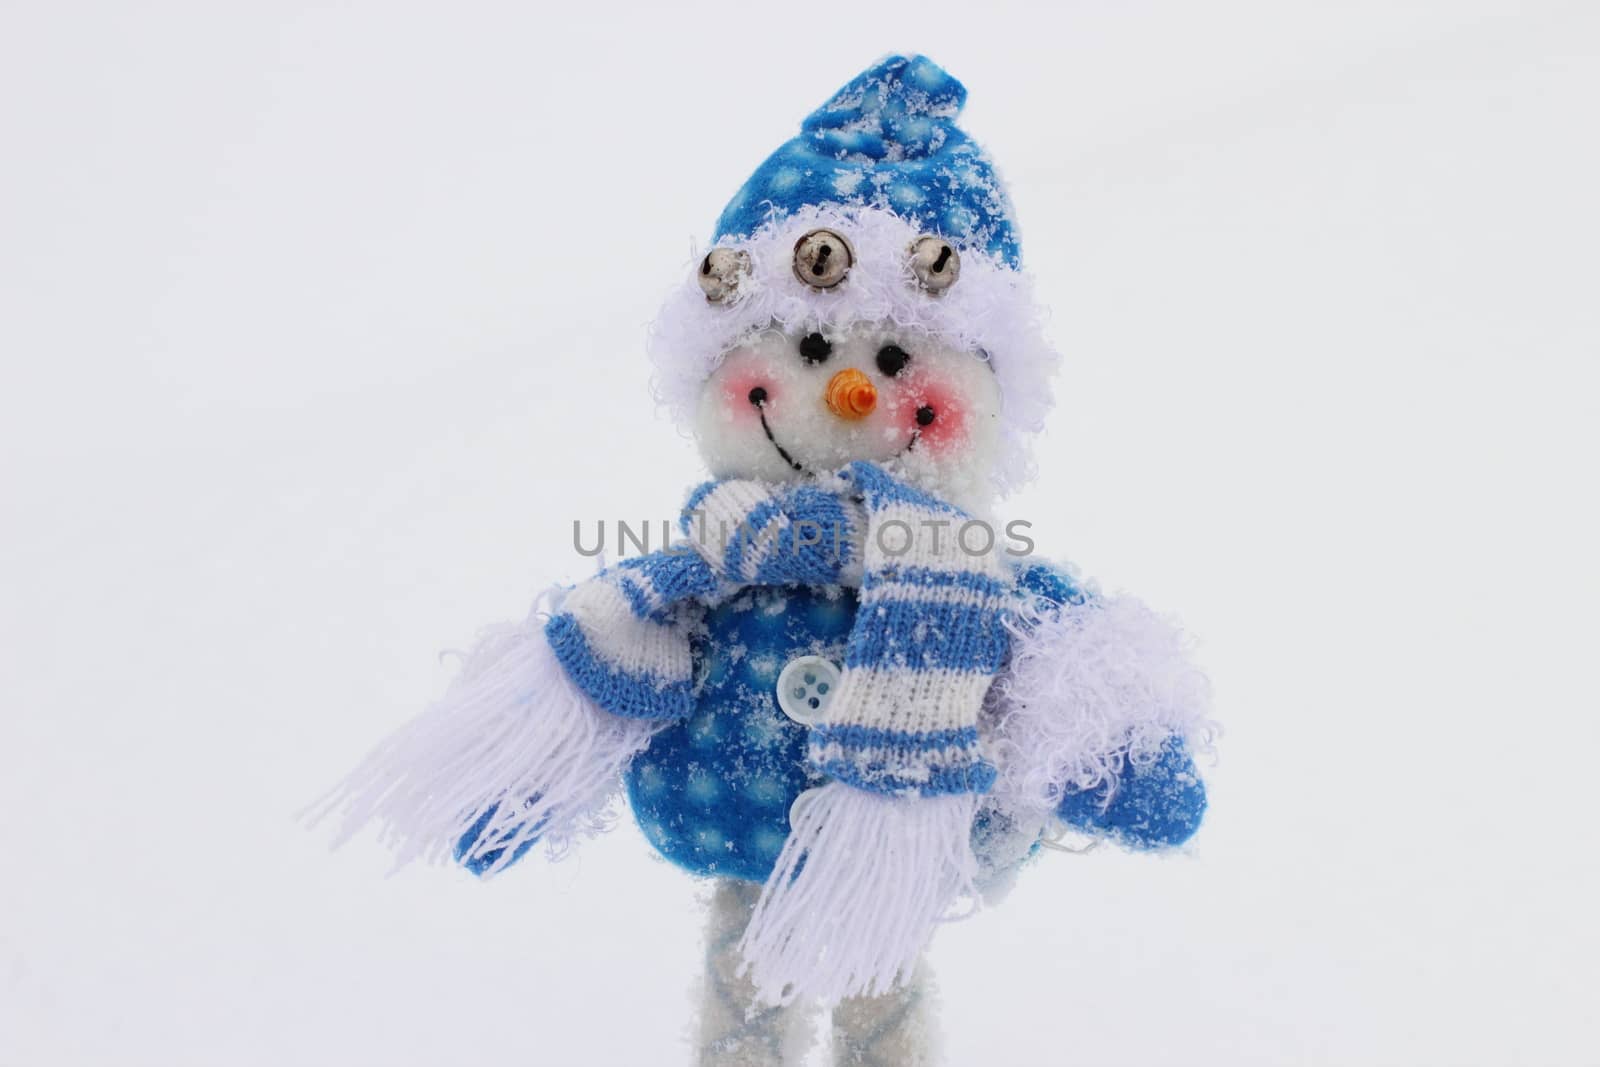 toy snowman by Metanna